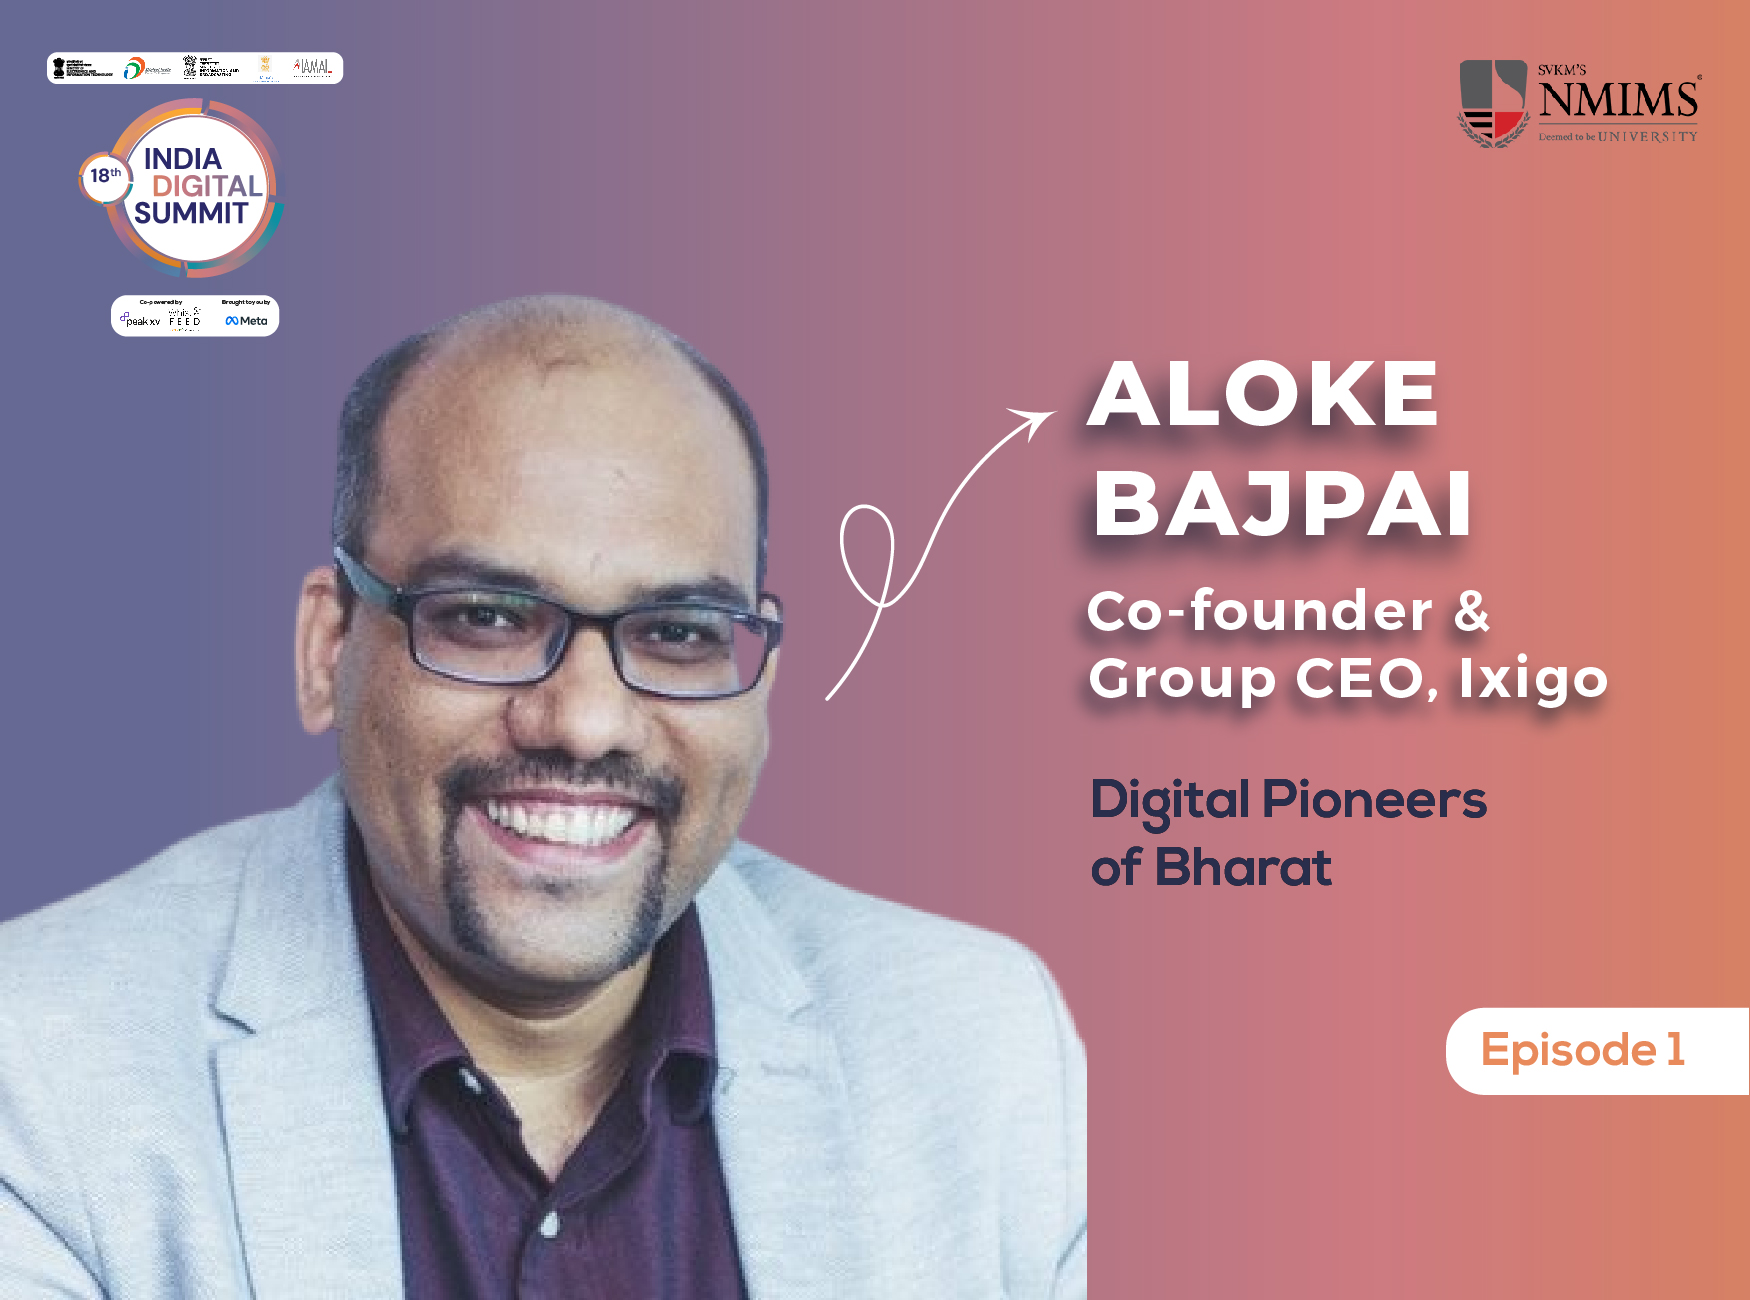 Episode 1: Digital Pioneers of Bharat